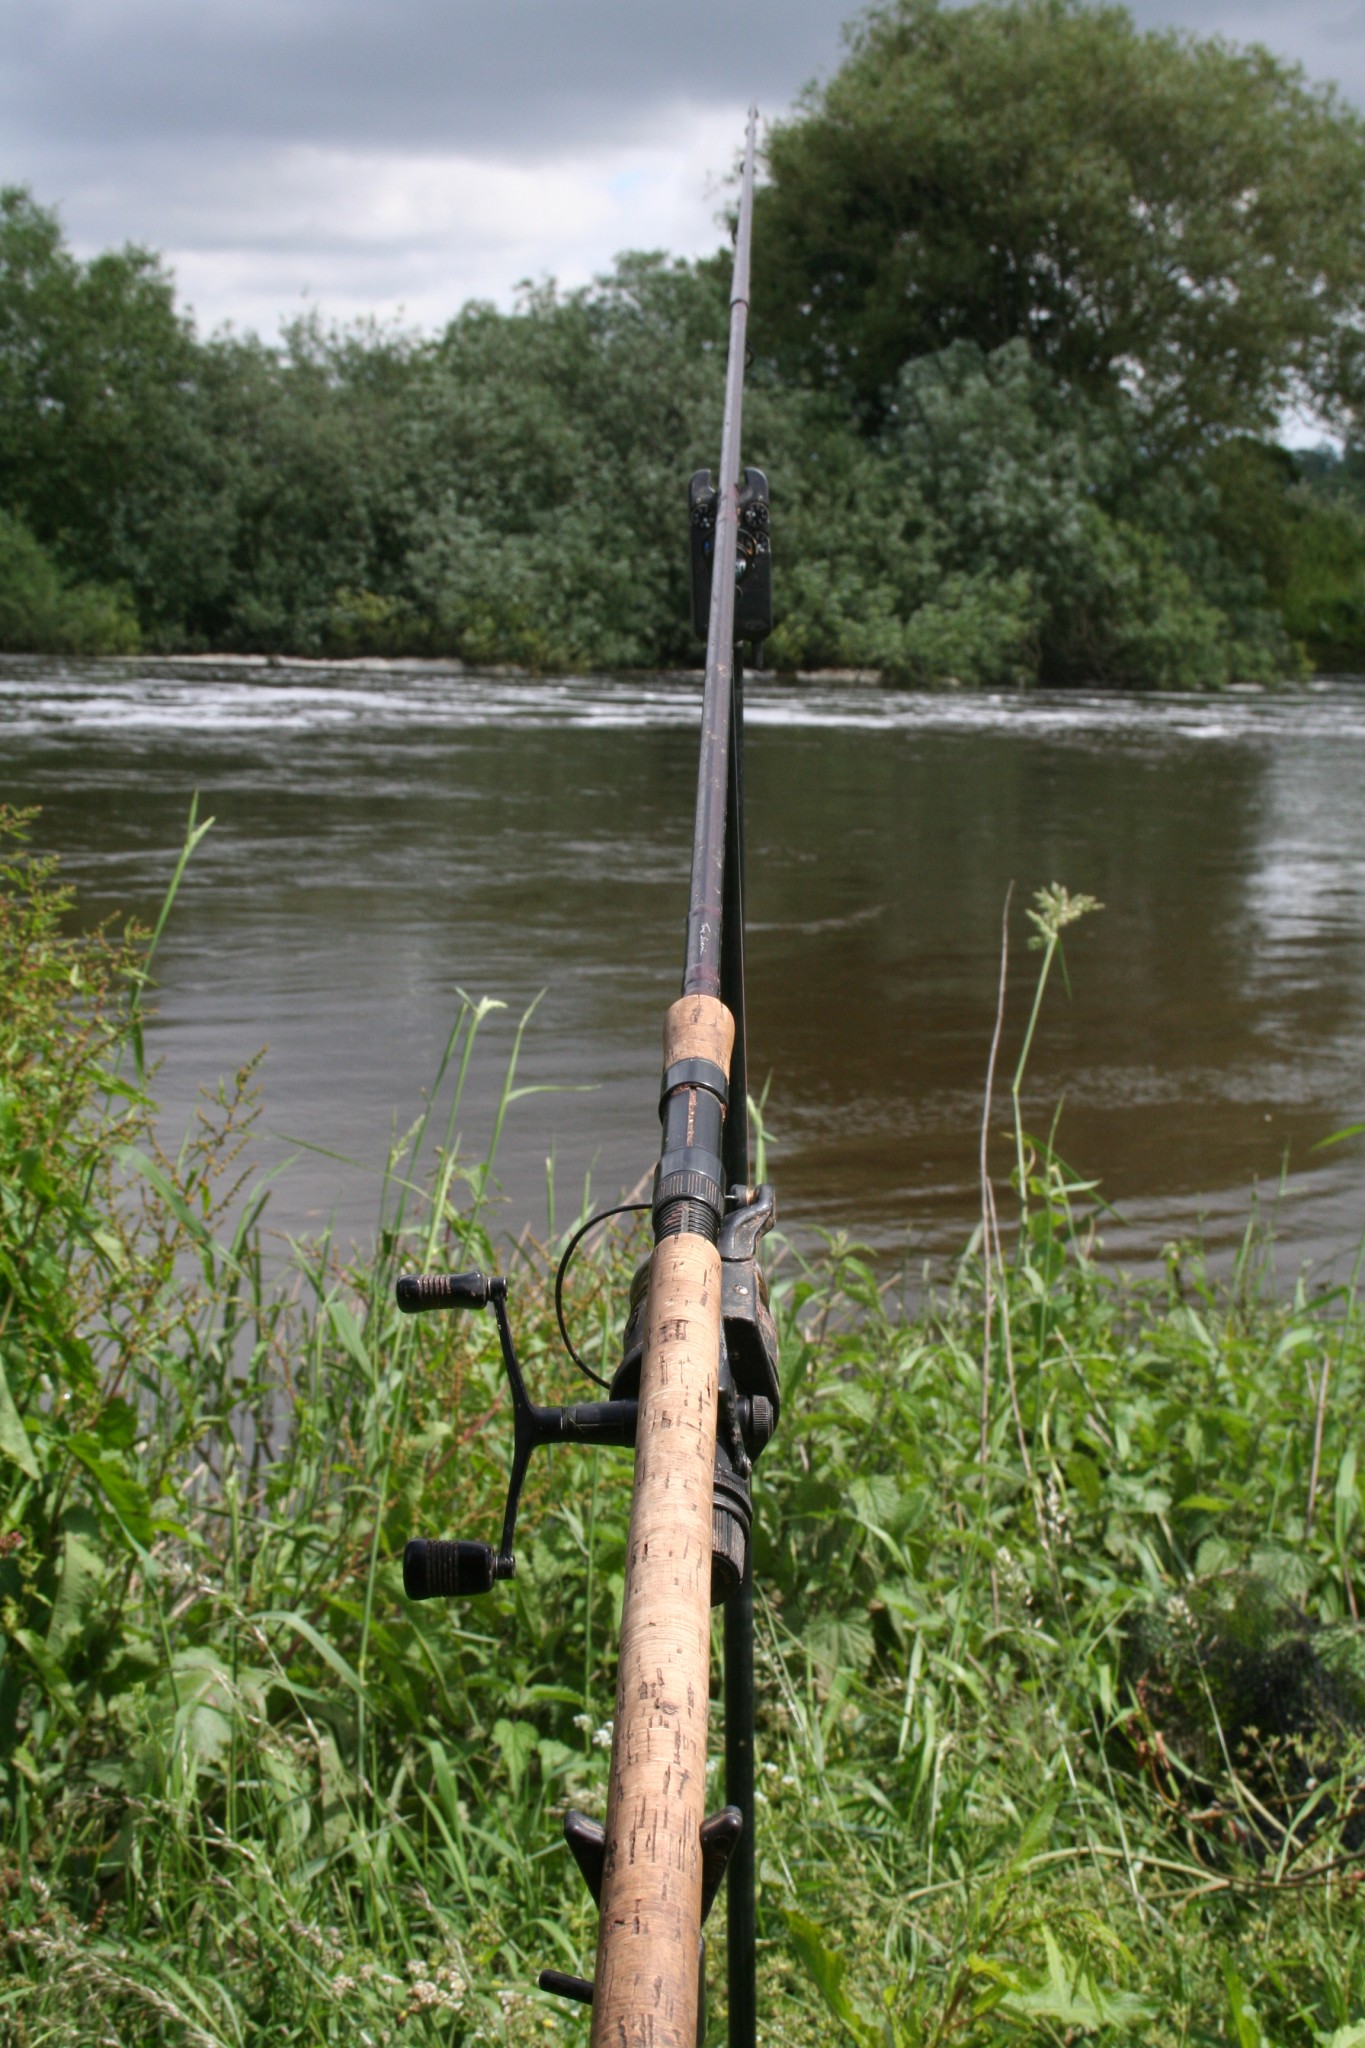 http://www.leeswordsfishing.co.uk/wp-content/uploads/2012/09/IMG_8522.jpg